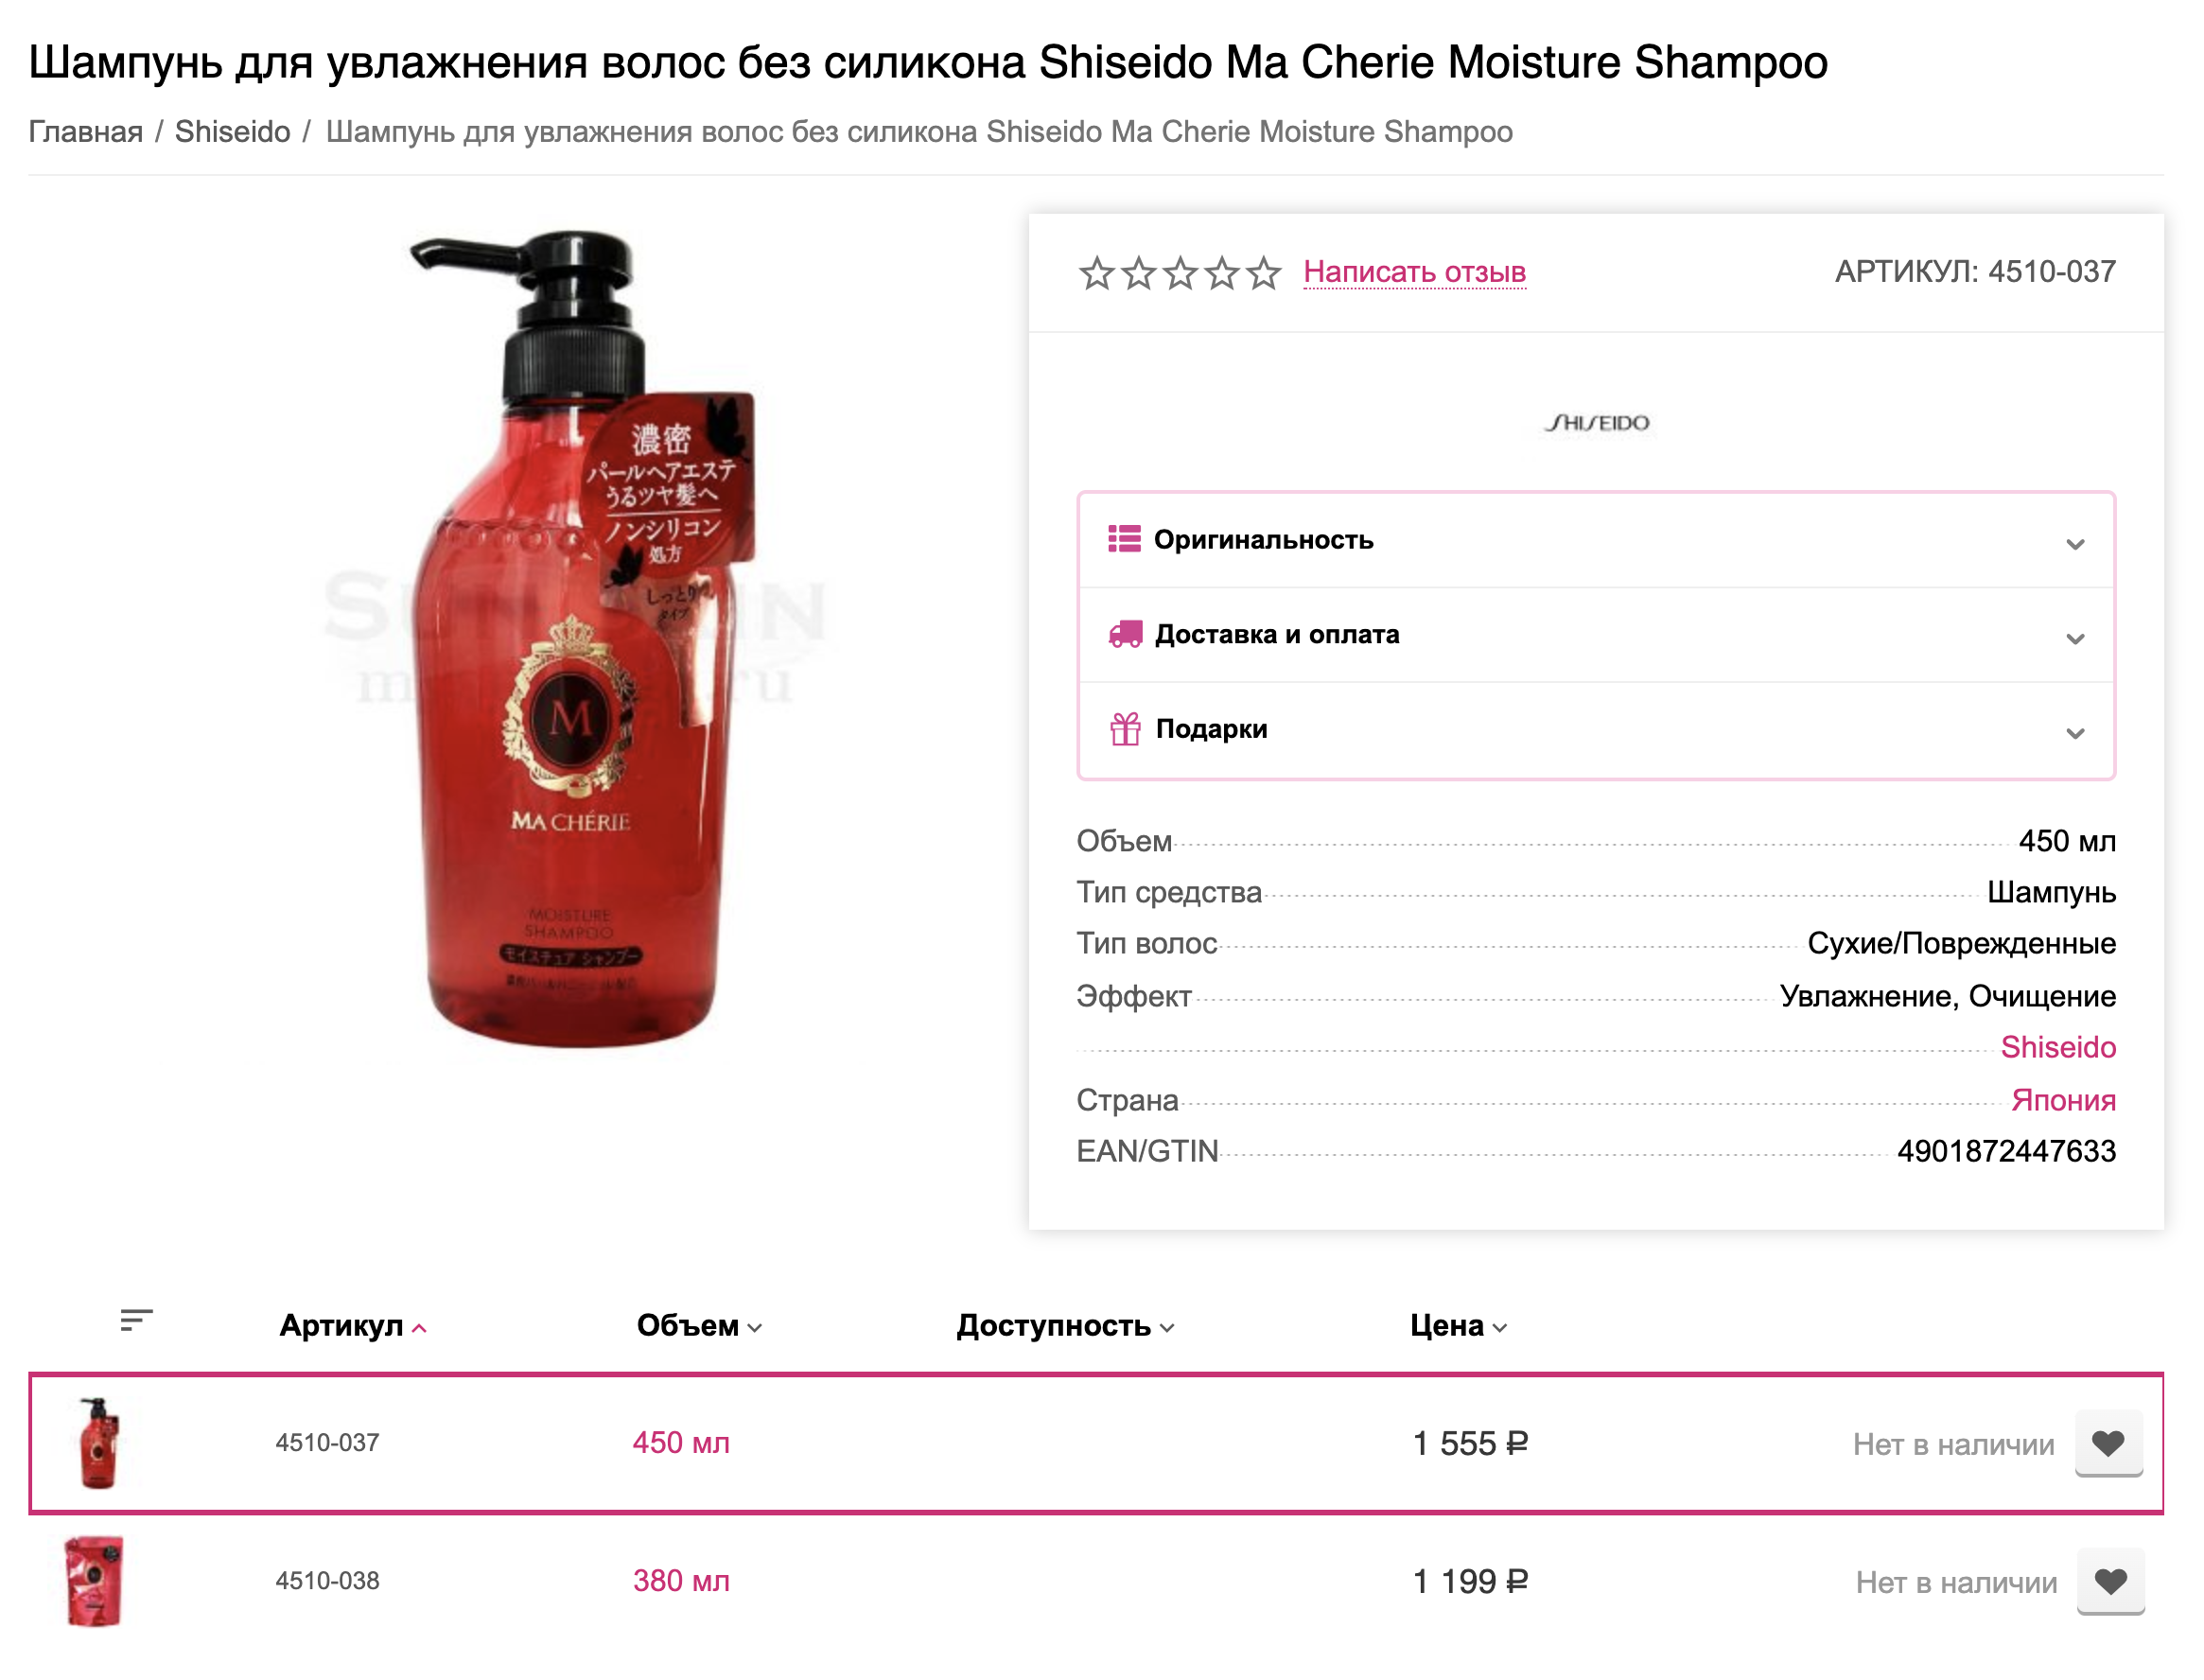 Шампунь Ma Cherie Shiseido. Я пользовалась им в Японии, там это недорогая и популярная серия. Очень нравится, какой блеск получается на волосах